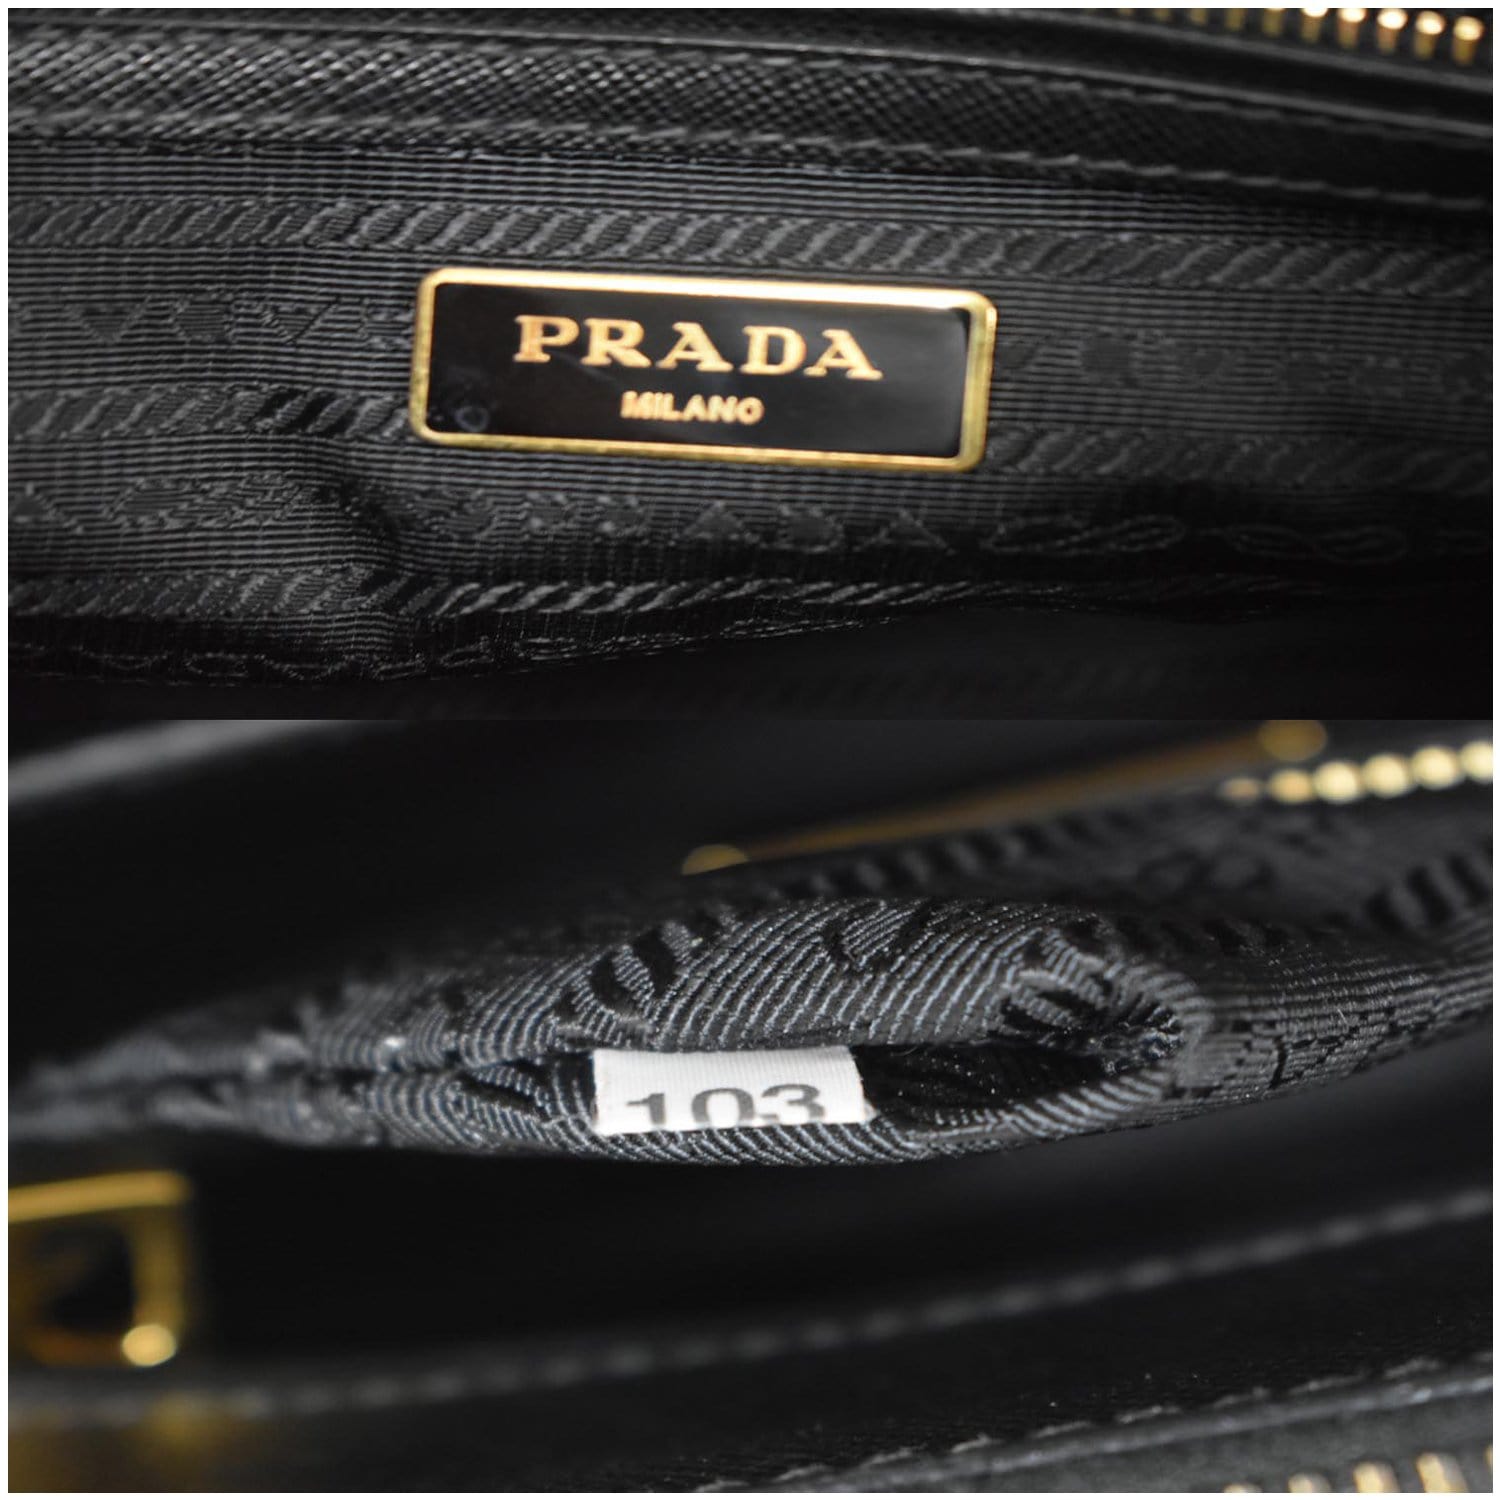 Prada - Galleria Small Saffiano Leather Nero